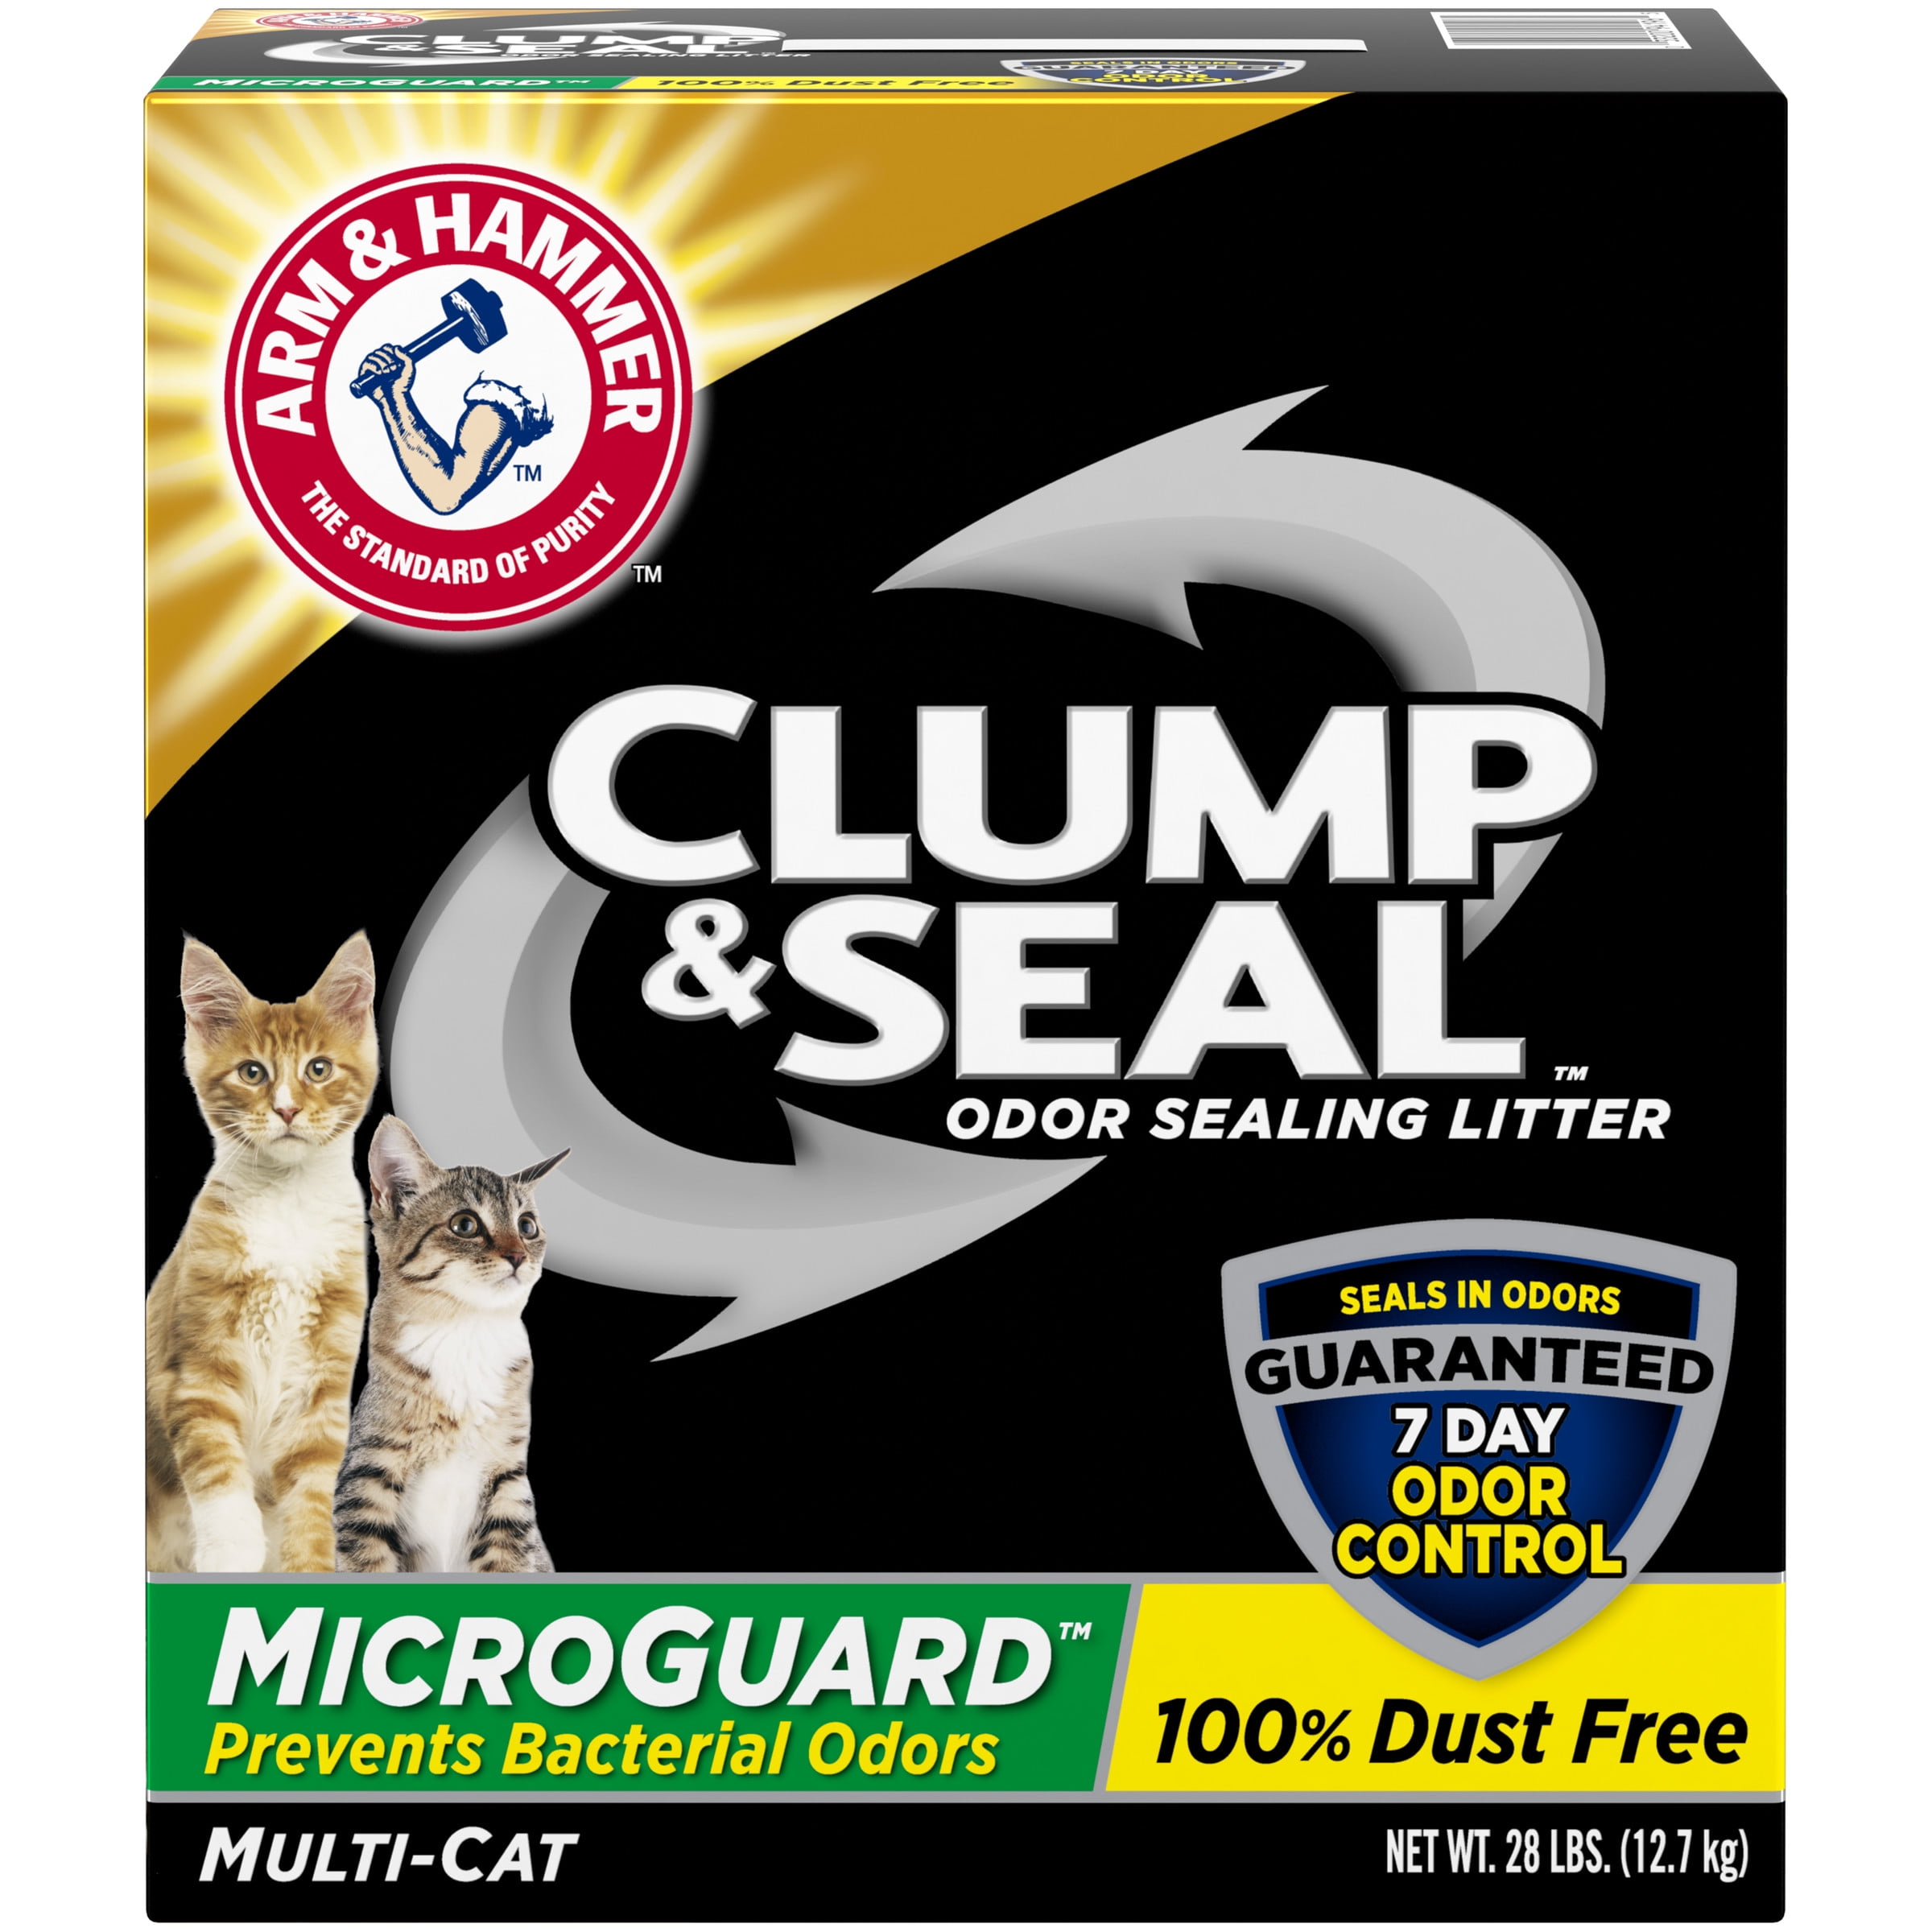 571789 28 Lbs Clump & Seal Microguard Odor Sealing Litter